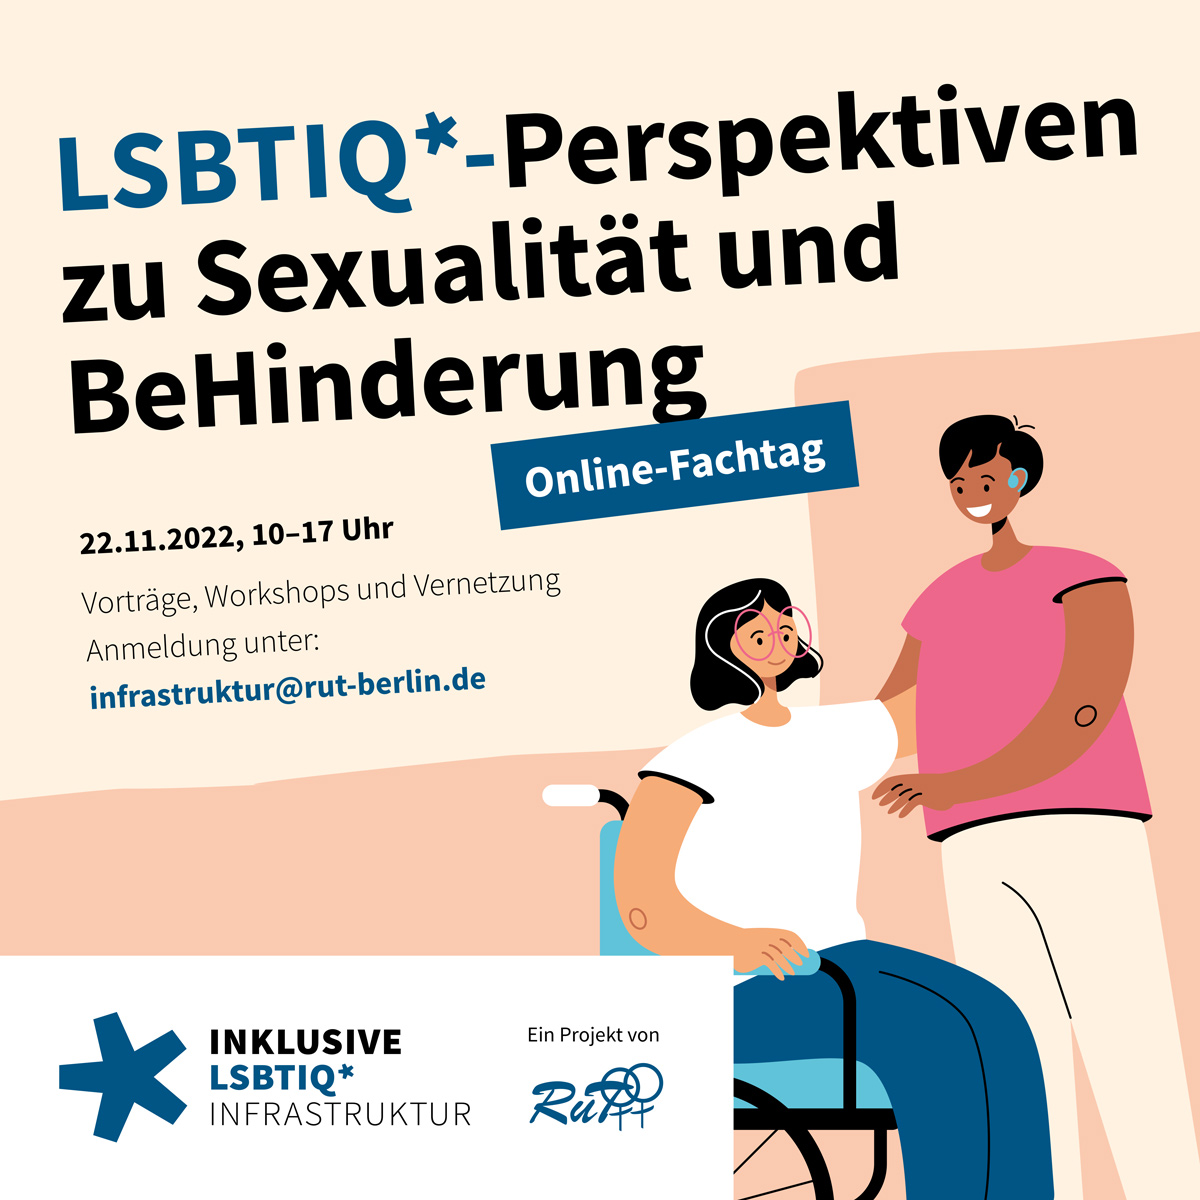 LSBTIQ*-Perspektiven zu Sexualität und BeHinderung Online-Fachtag am 22.11.2022 von 10 - 17 Uhr